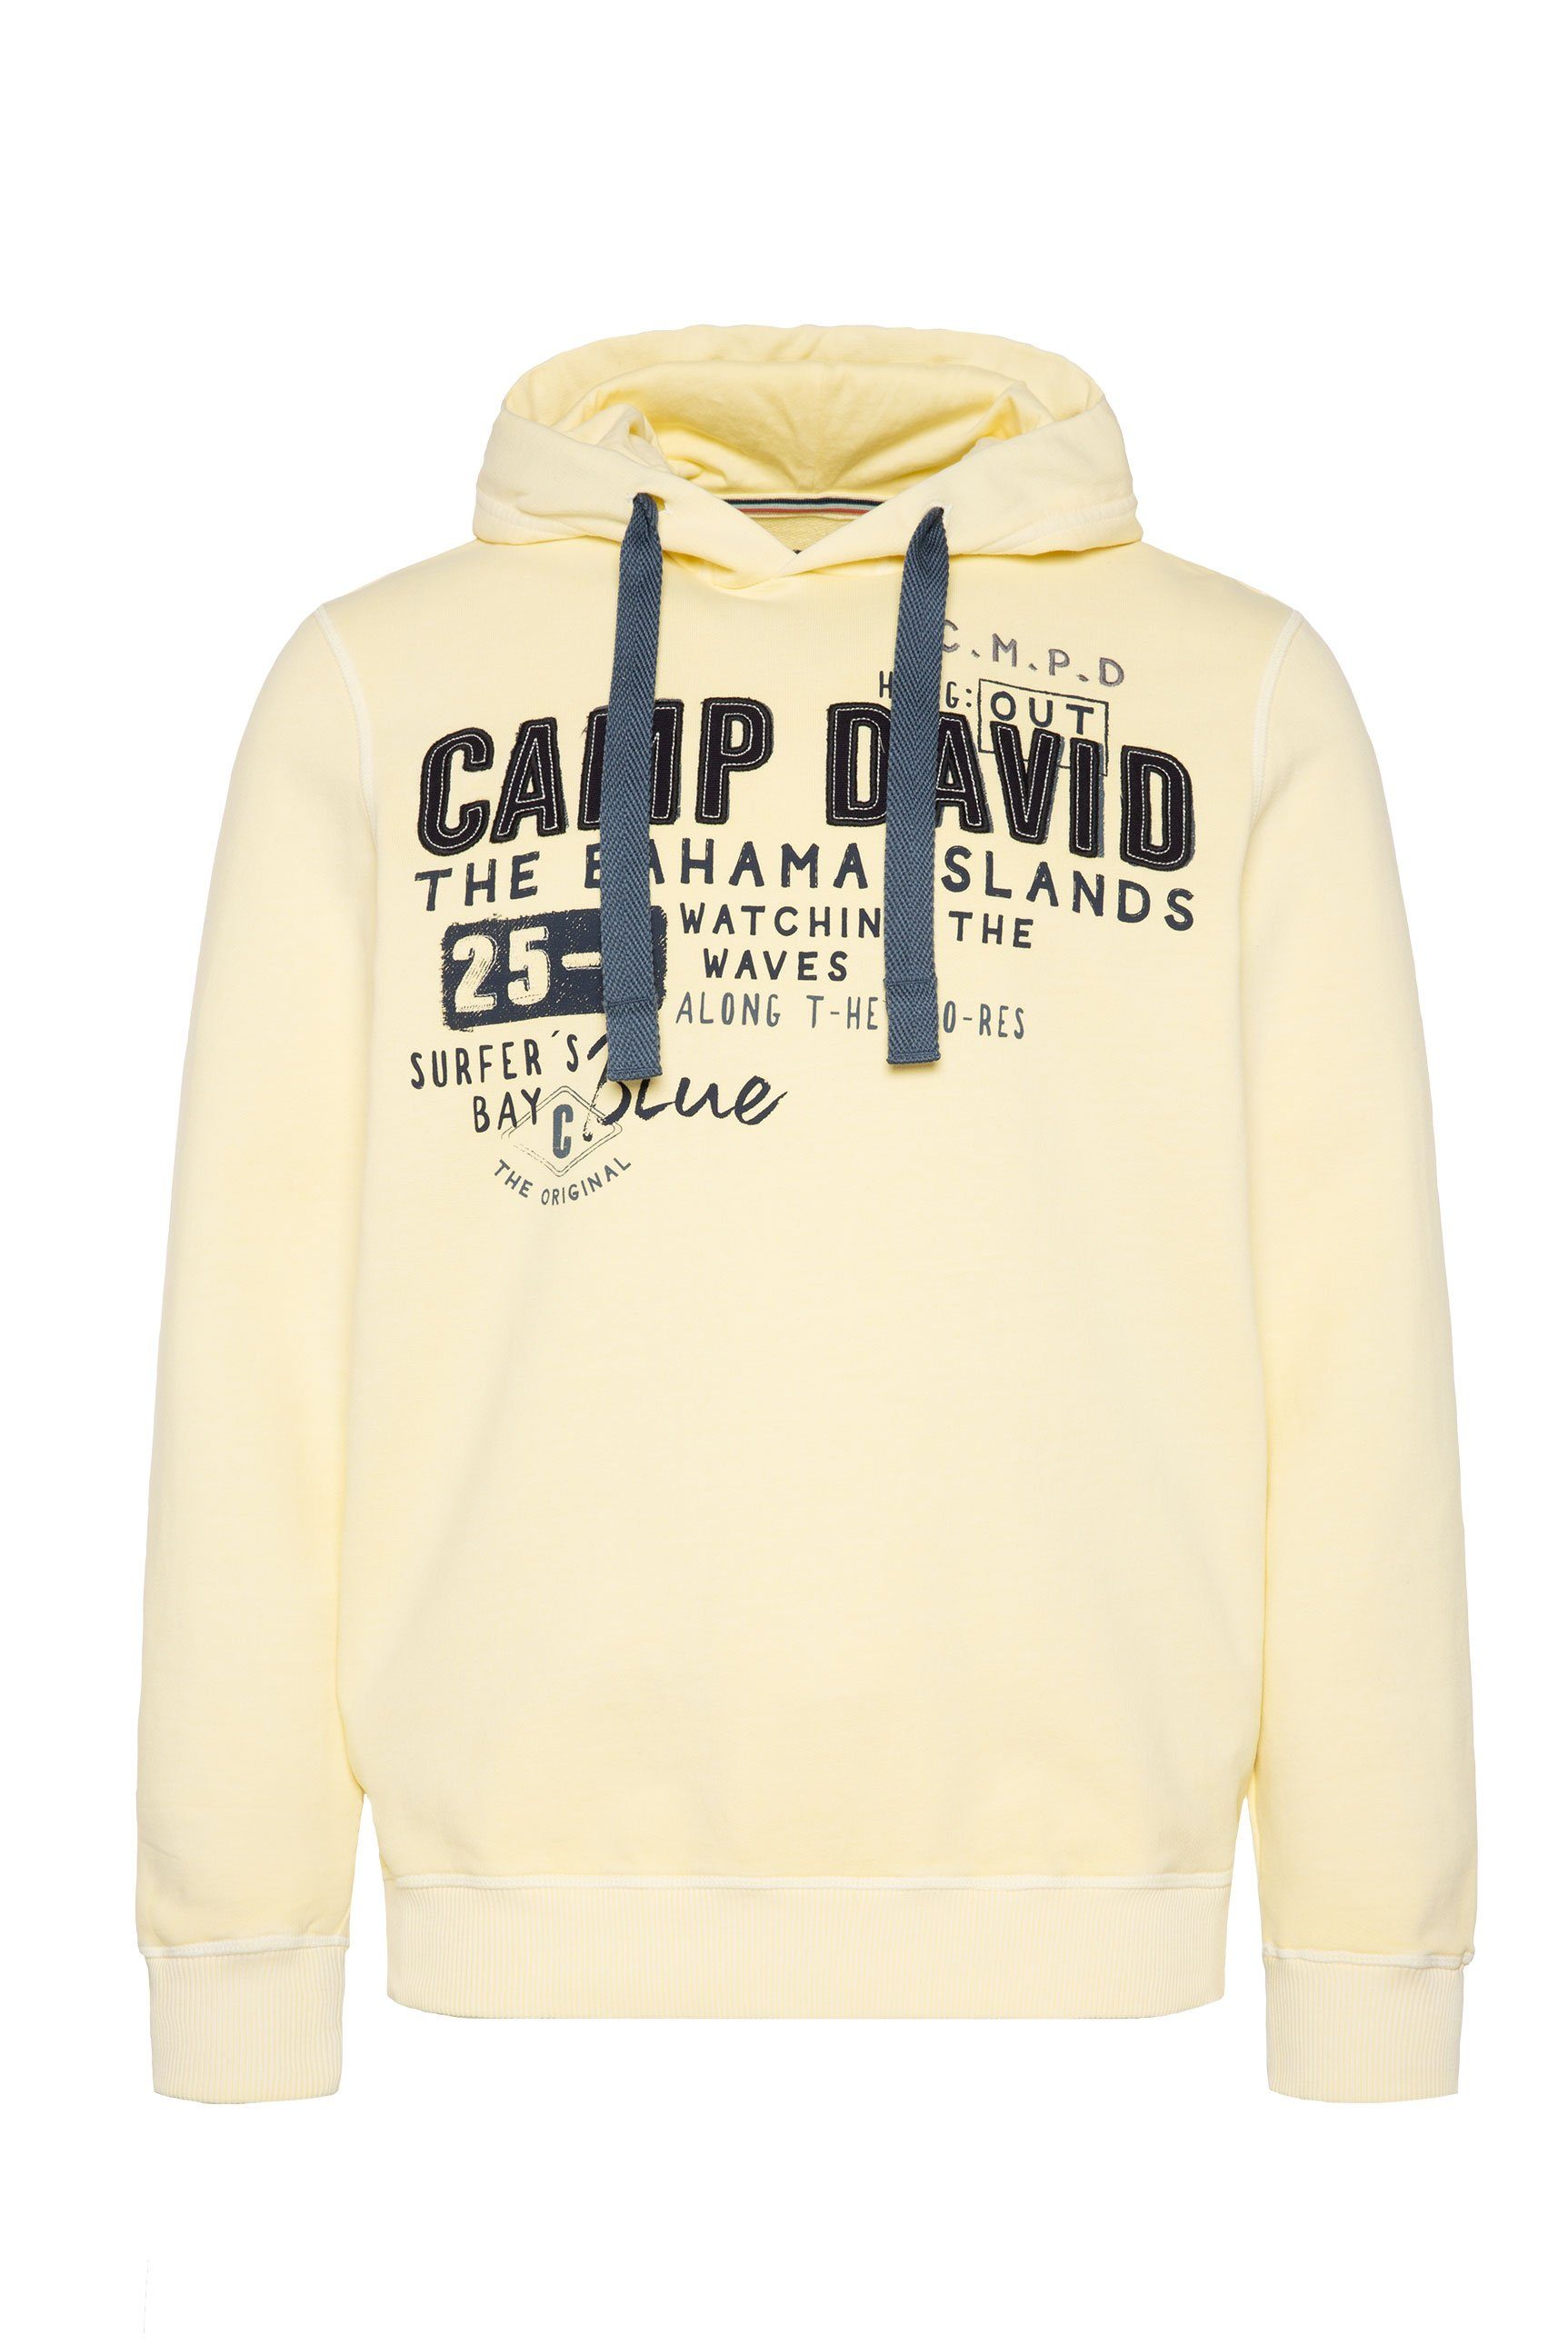 DAVID CAMP mit Kapuzensweatshirt Schriftzügen sun banana